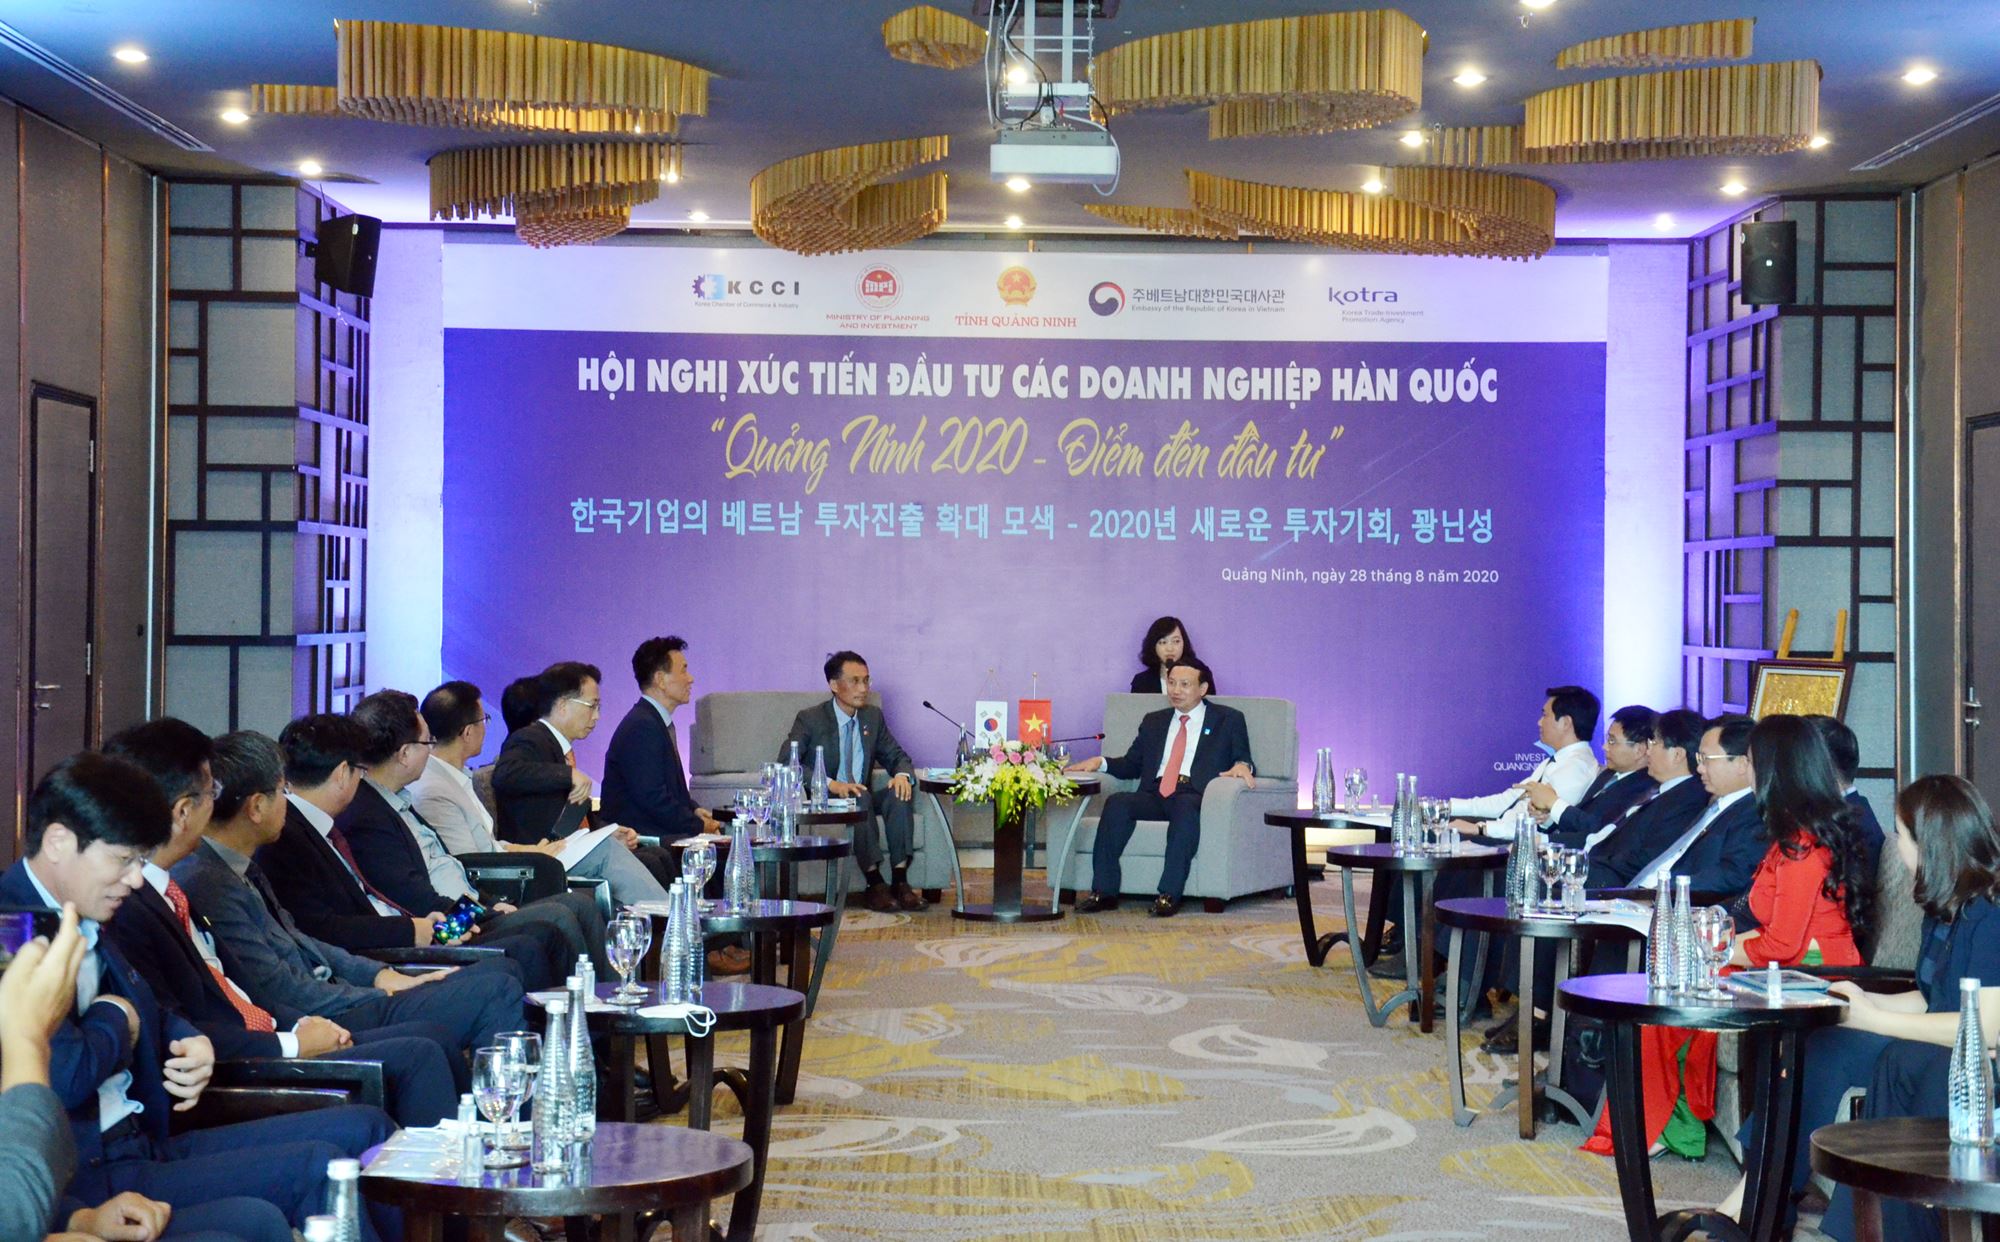  Quảng Ninh phối hợptổ chức Hội nghị Xúc tiến đầu tư các doanh nghiệp Hàn Quốc năm 2020 với chủ đề “Quảng Ninh 2020 - Điểm đến đầu tư”.